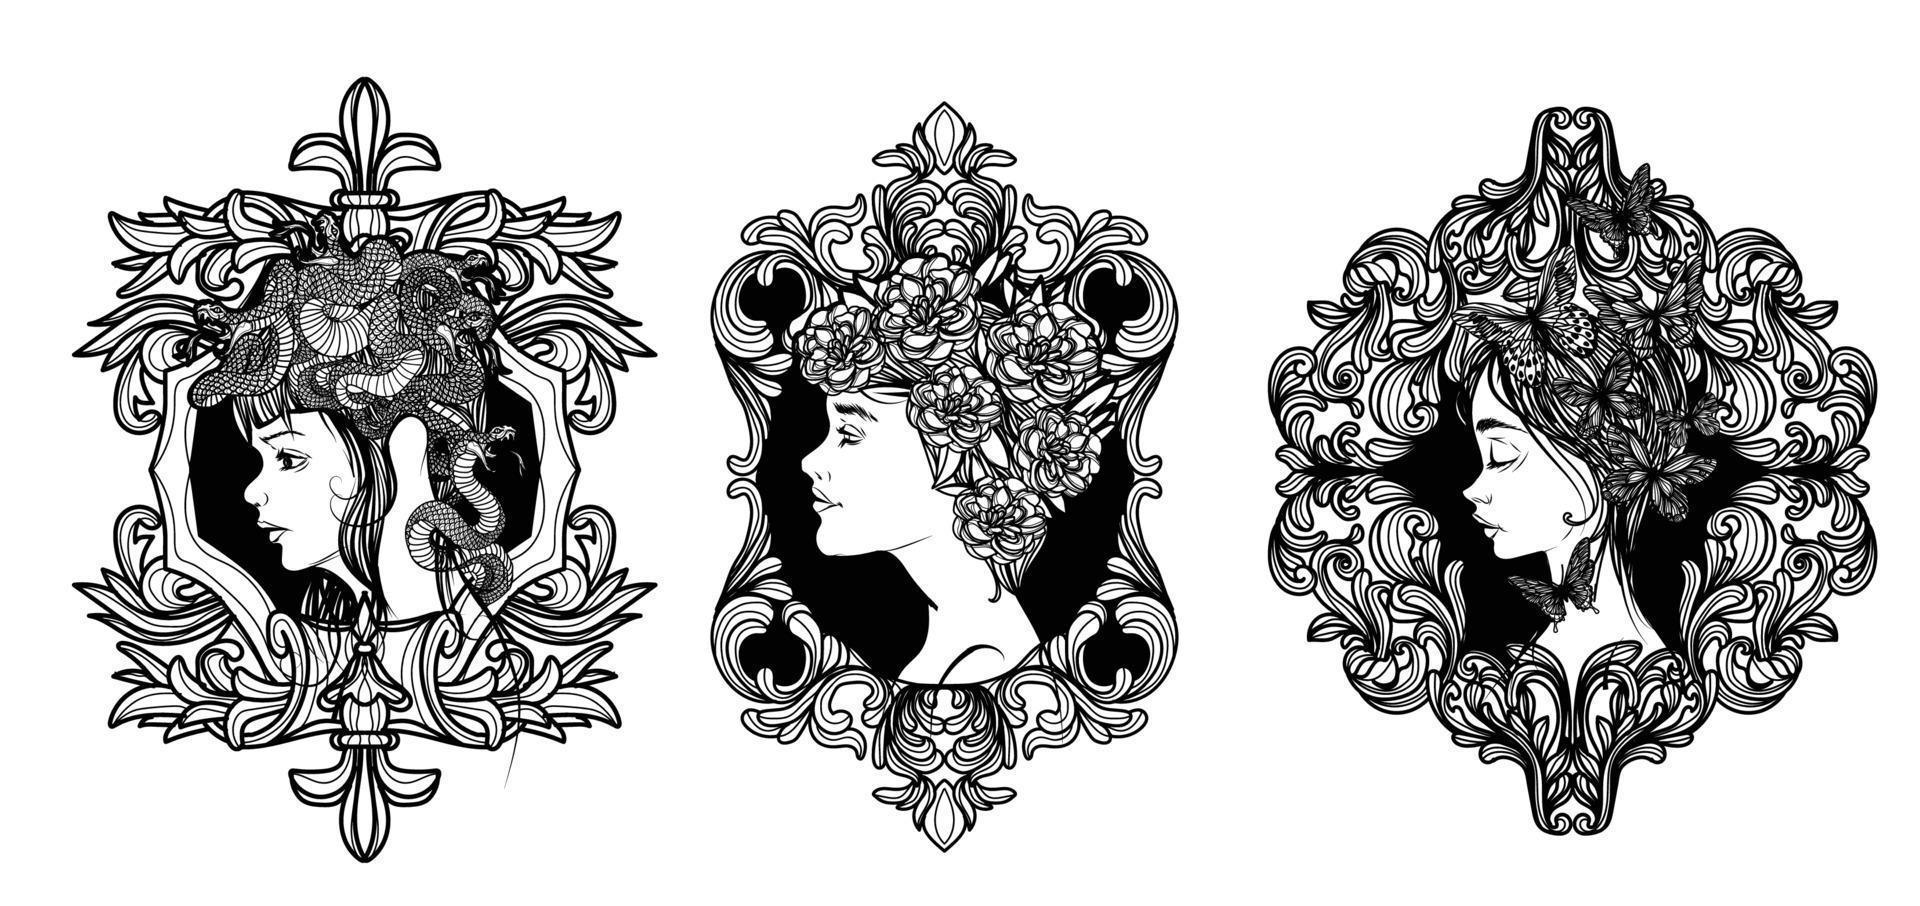 arte del tatuaje conjunto de mujeres y dibujo a mano de flores y bocetos en blanco y negro vector